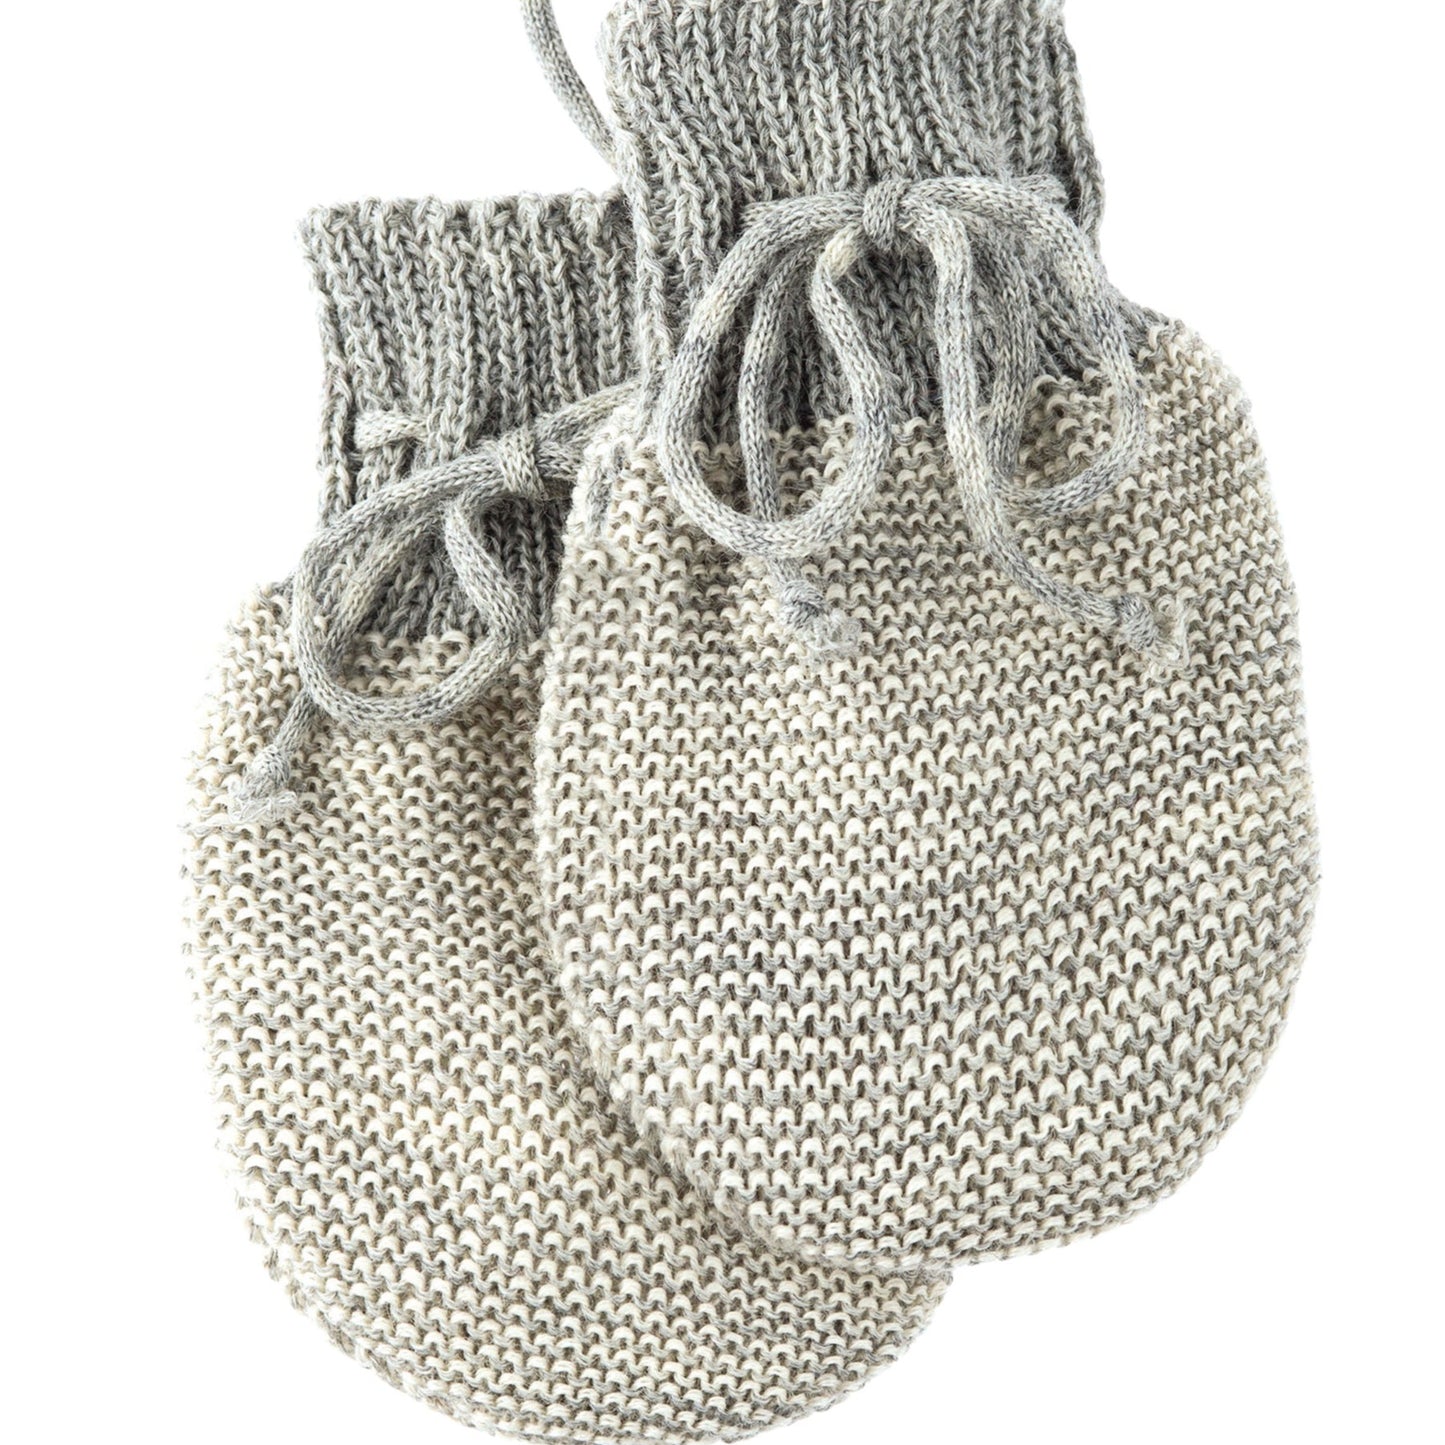 Mitaine pour bébé Disana, laine mérinos tricotée